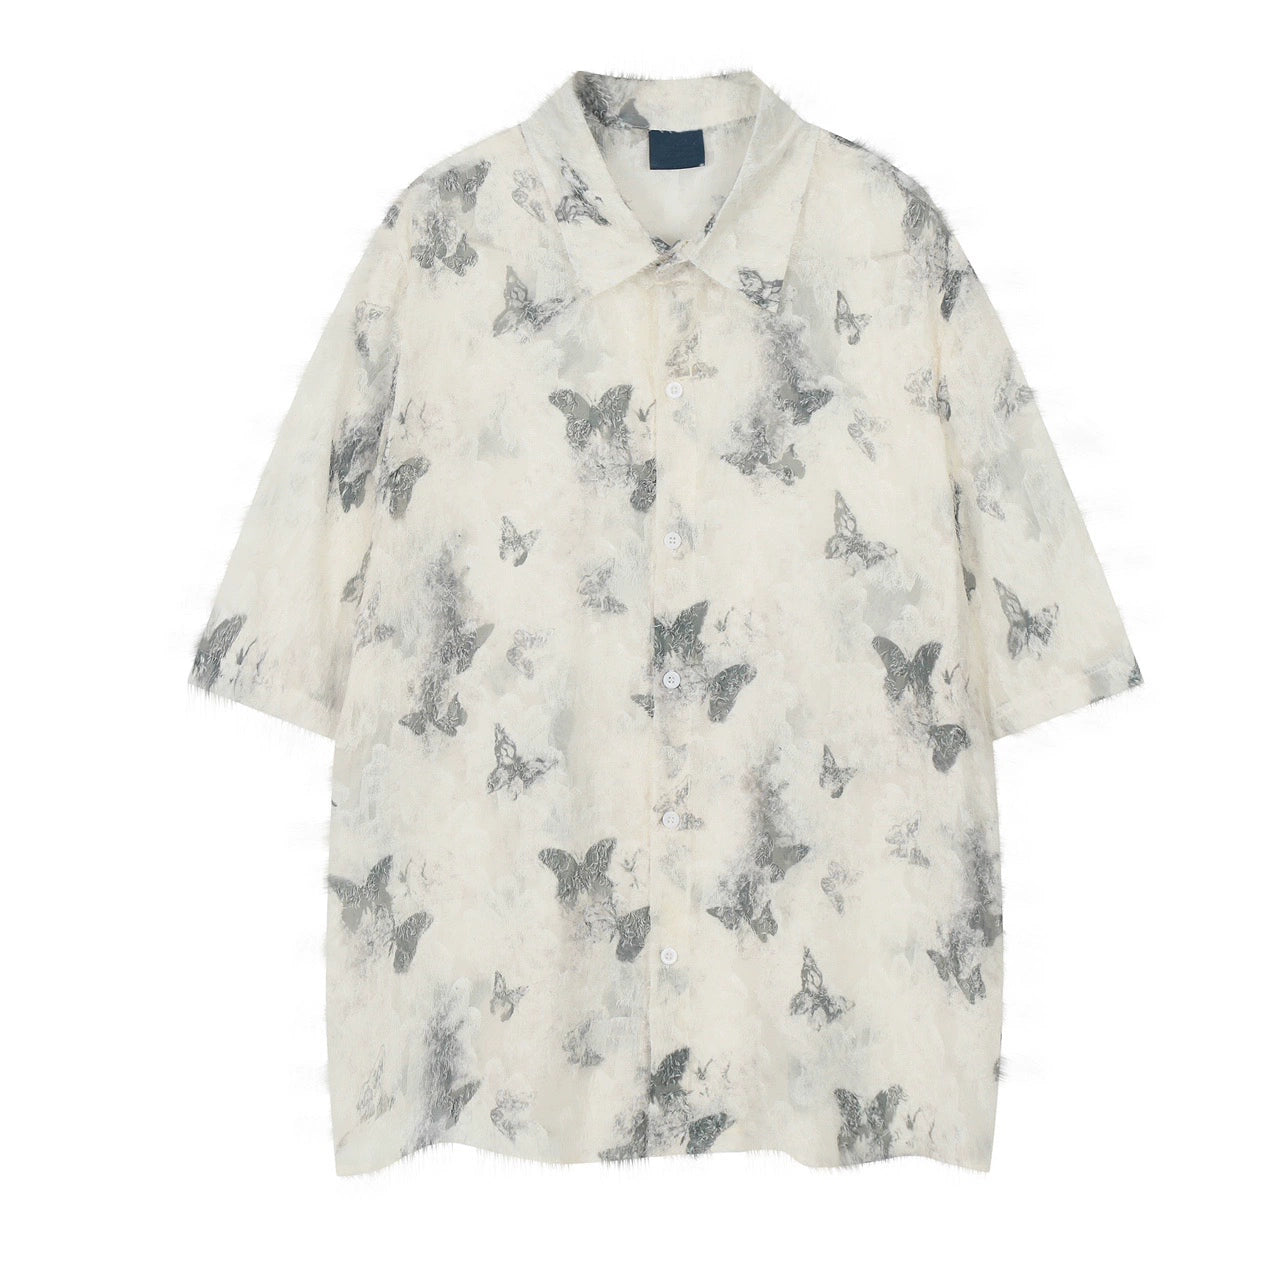 Butterfly Full Print Oversize Sheer Short Sleeve Shirt WN5884